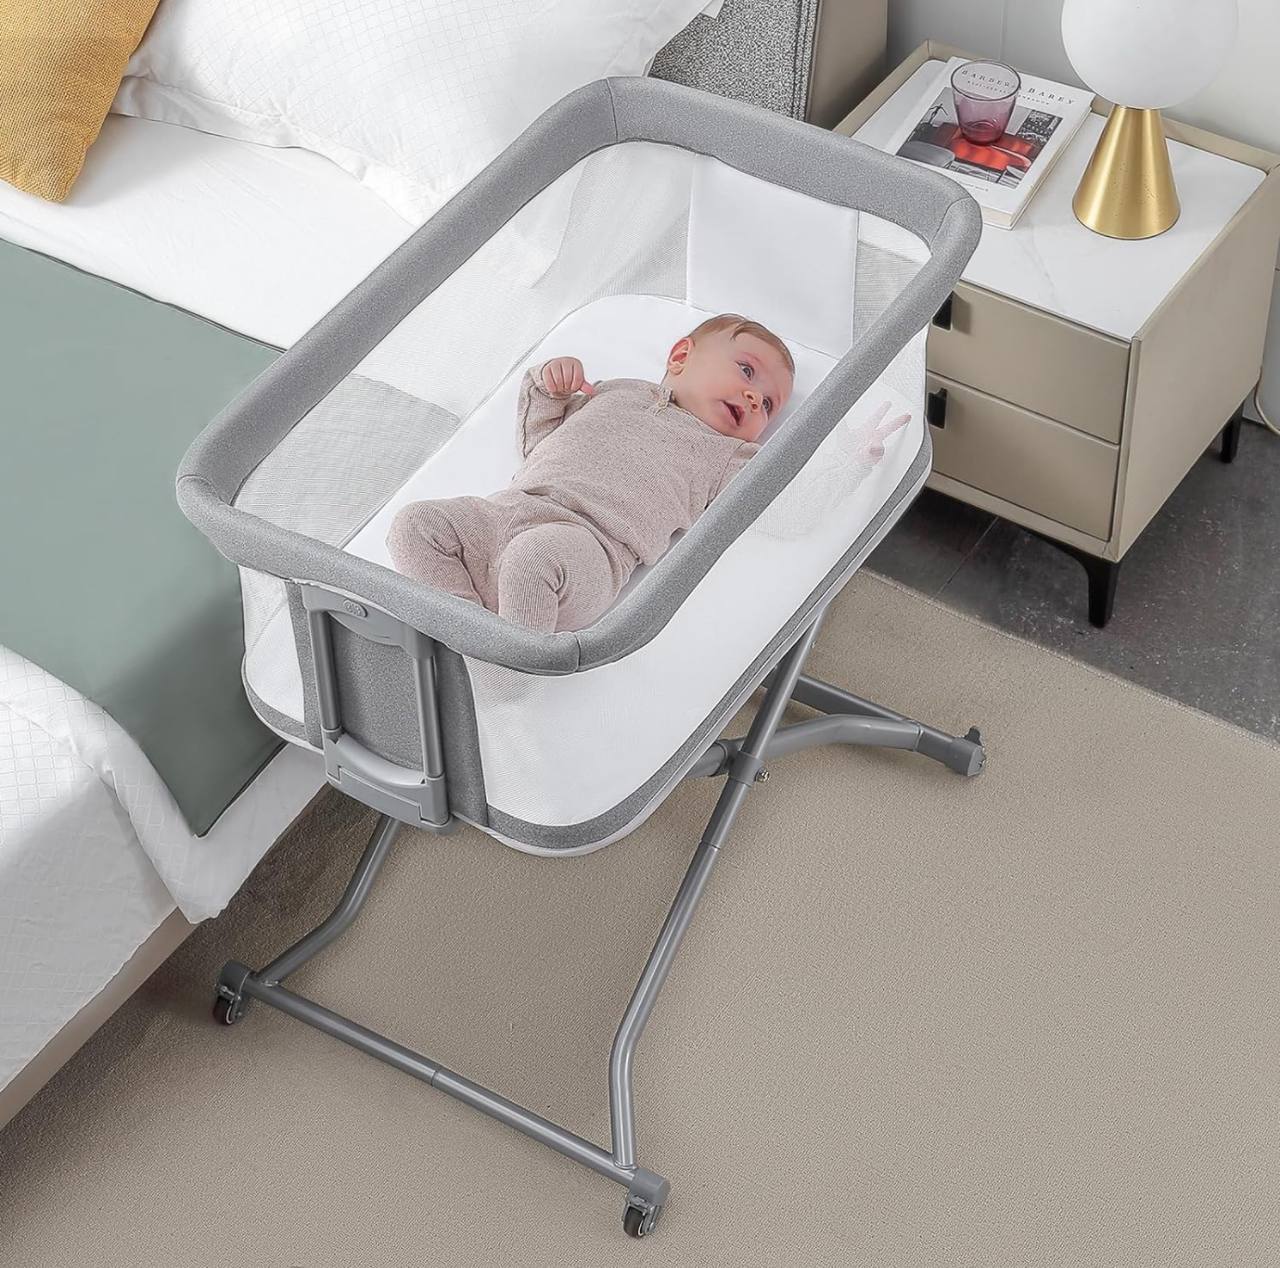 سرير نوم مشترك محمول لحديثي الولادة